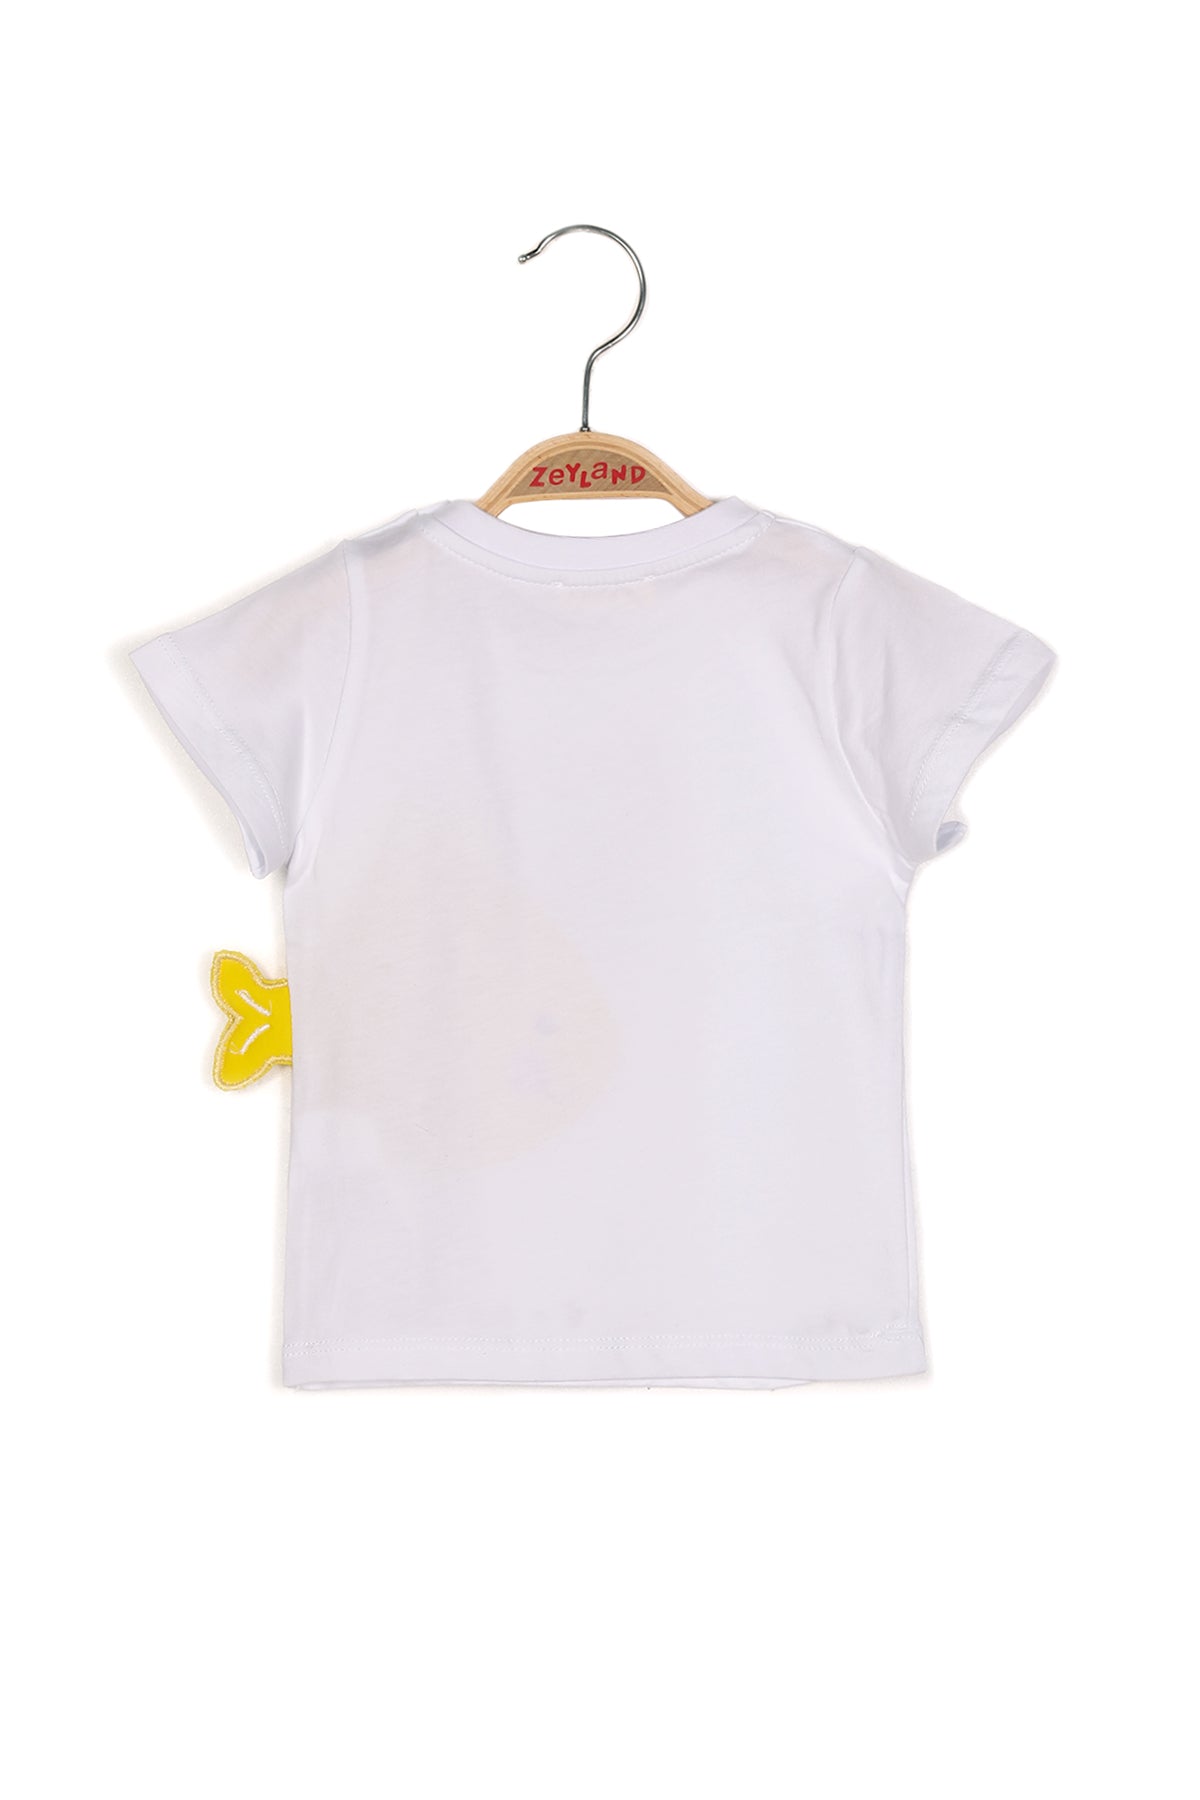 Erkek Bebek Balık Baskılı T-shirt-2